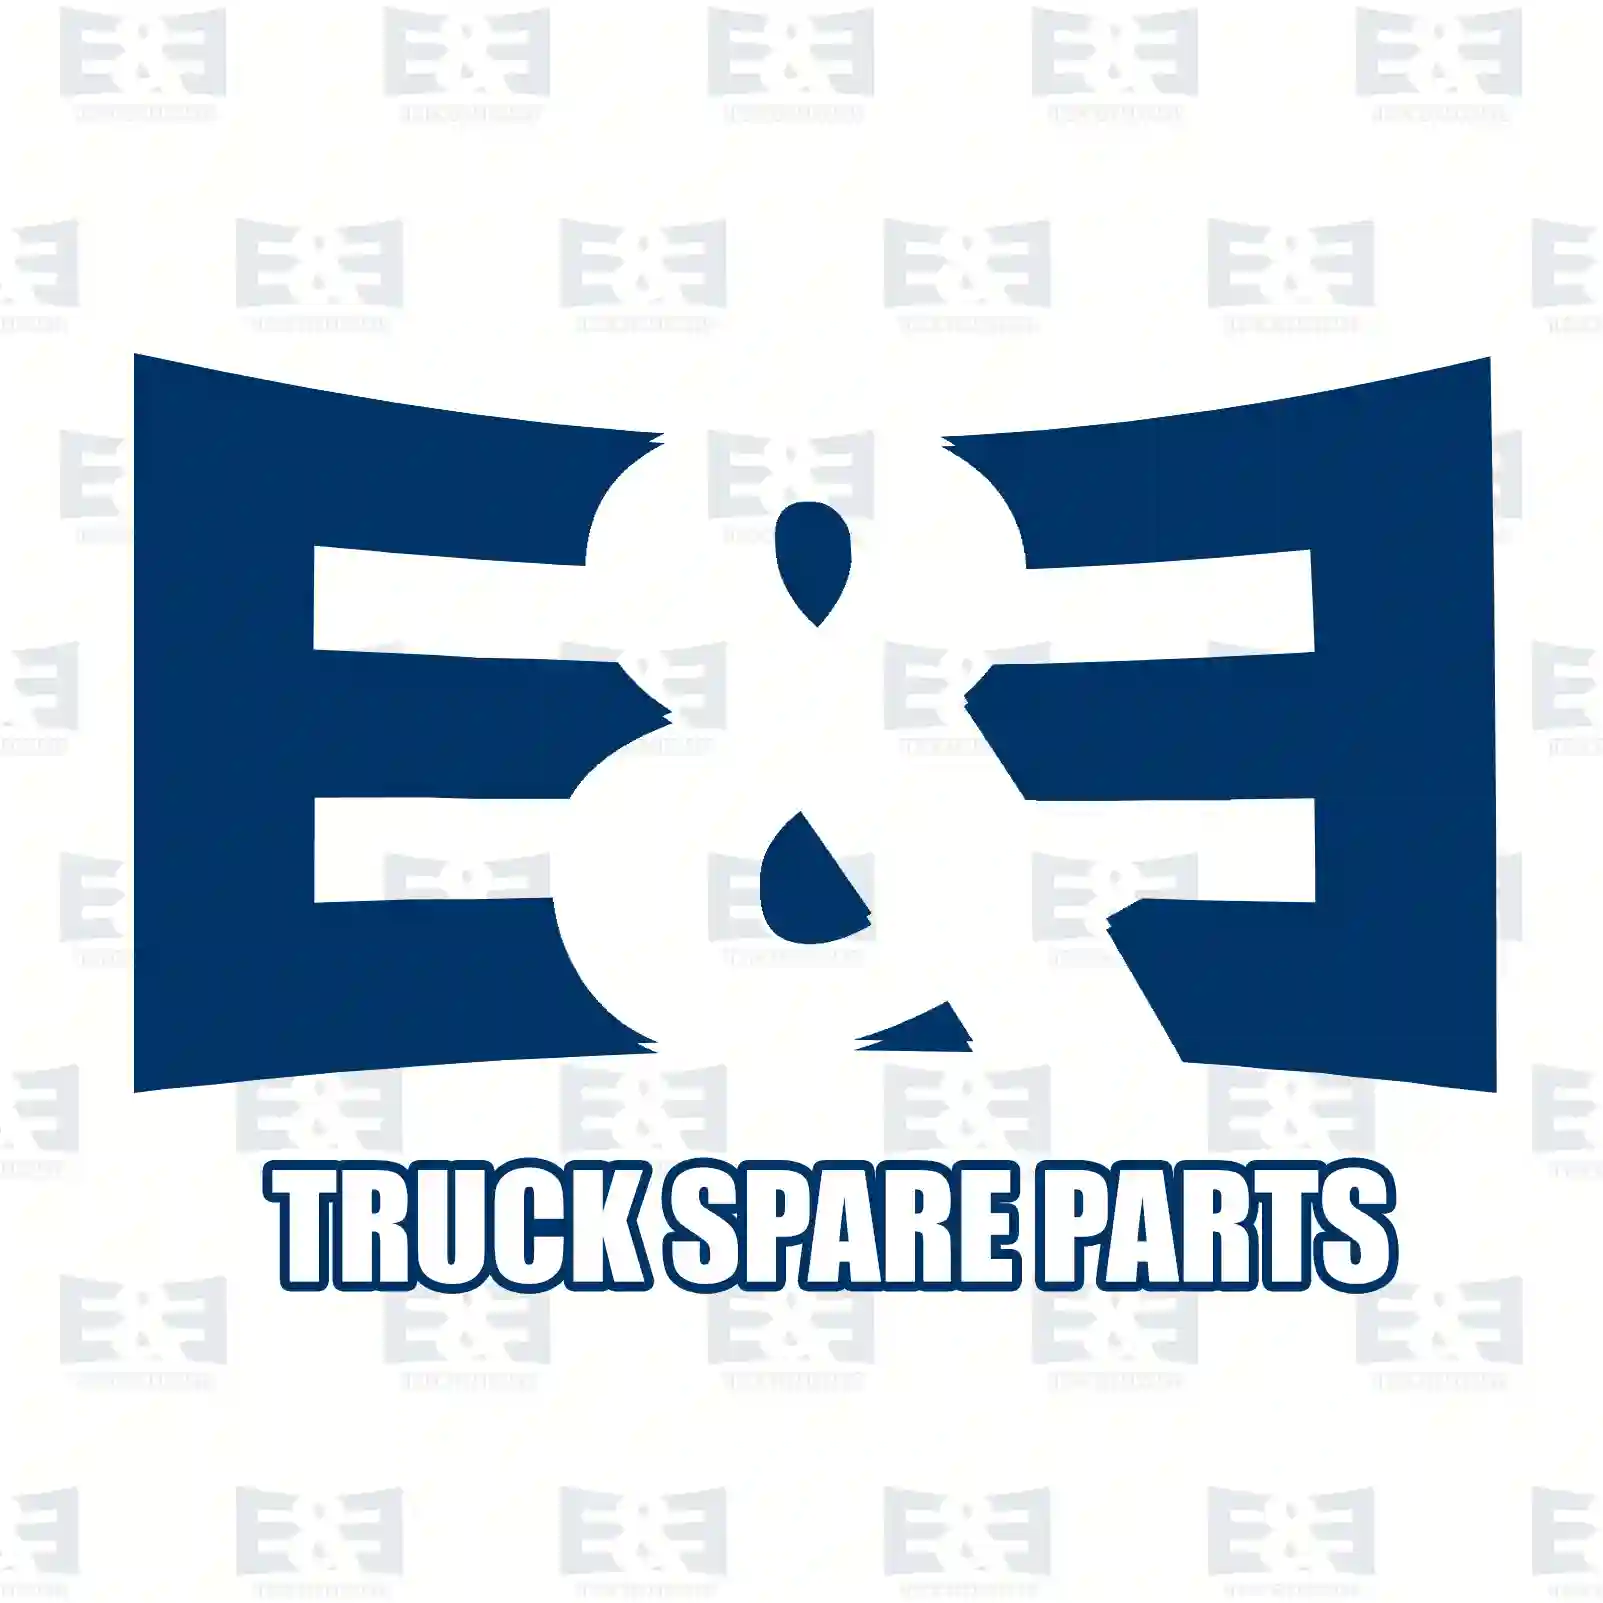 Step well case, right, 2E2280945, 504037735, ZG61225-0008 ||  2E2280945 E&E Truck Spare Parts | Truck Spare Parts, Auotomotive Spare Parts Step well case, right, 2E2280945, 504037735, ZG61225-0008 ||  2E2280945 E&E Truck Spare Parts | Truck Spare Parts, Auotomotive Spare Parts